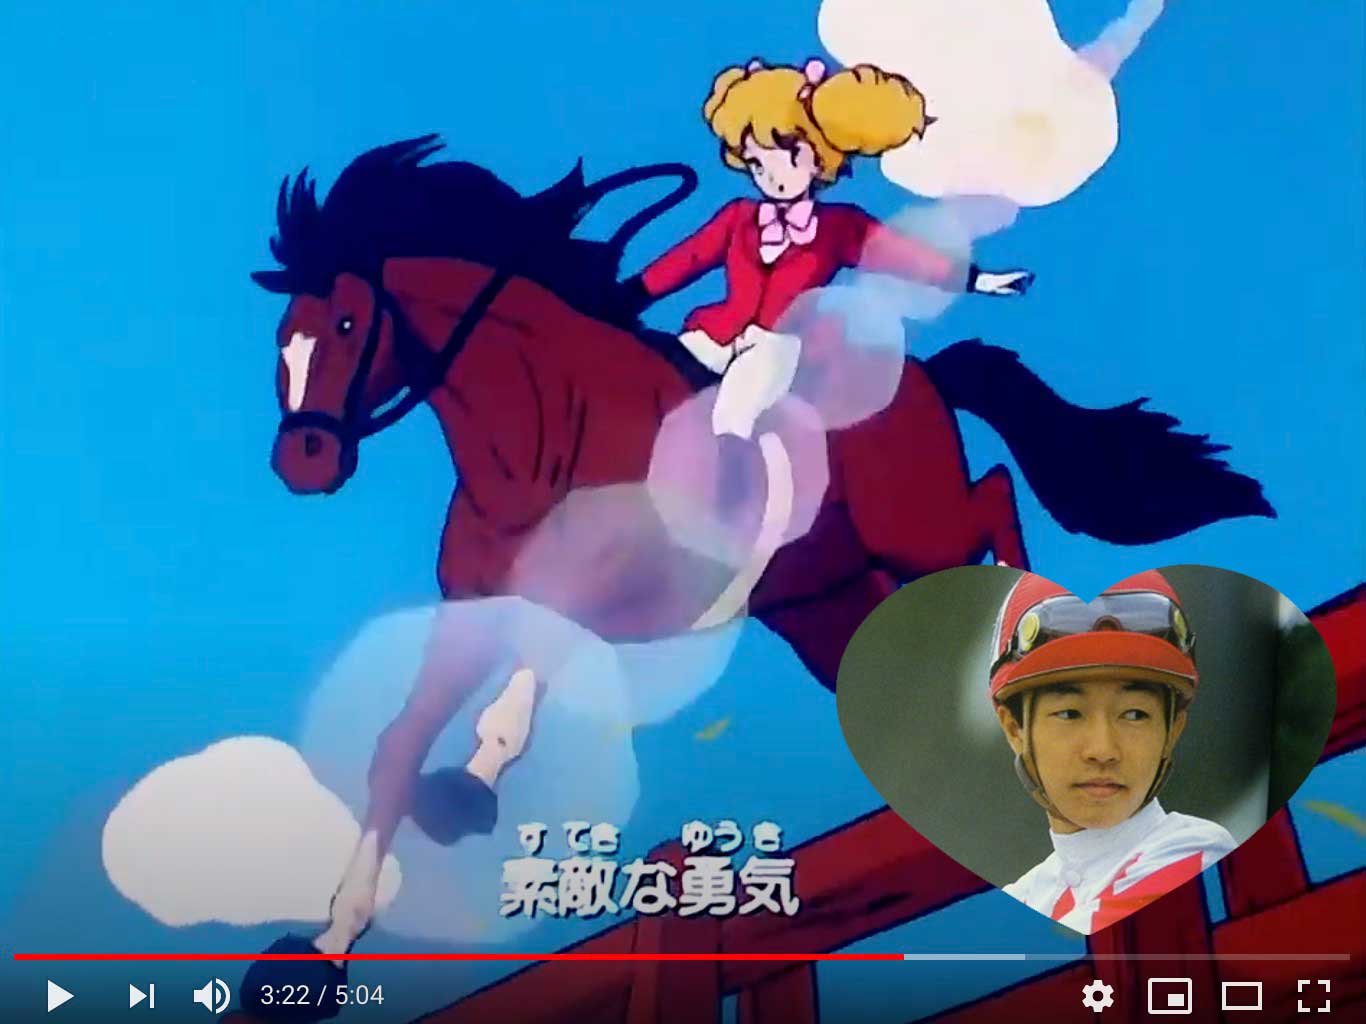 ハロー!レディリンという乗馬アニメの画像と武豊